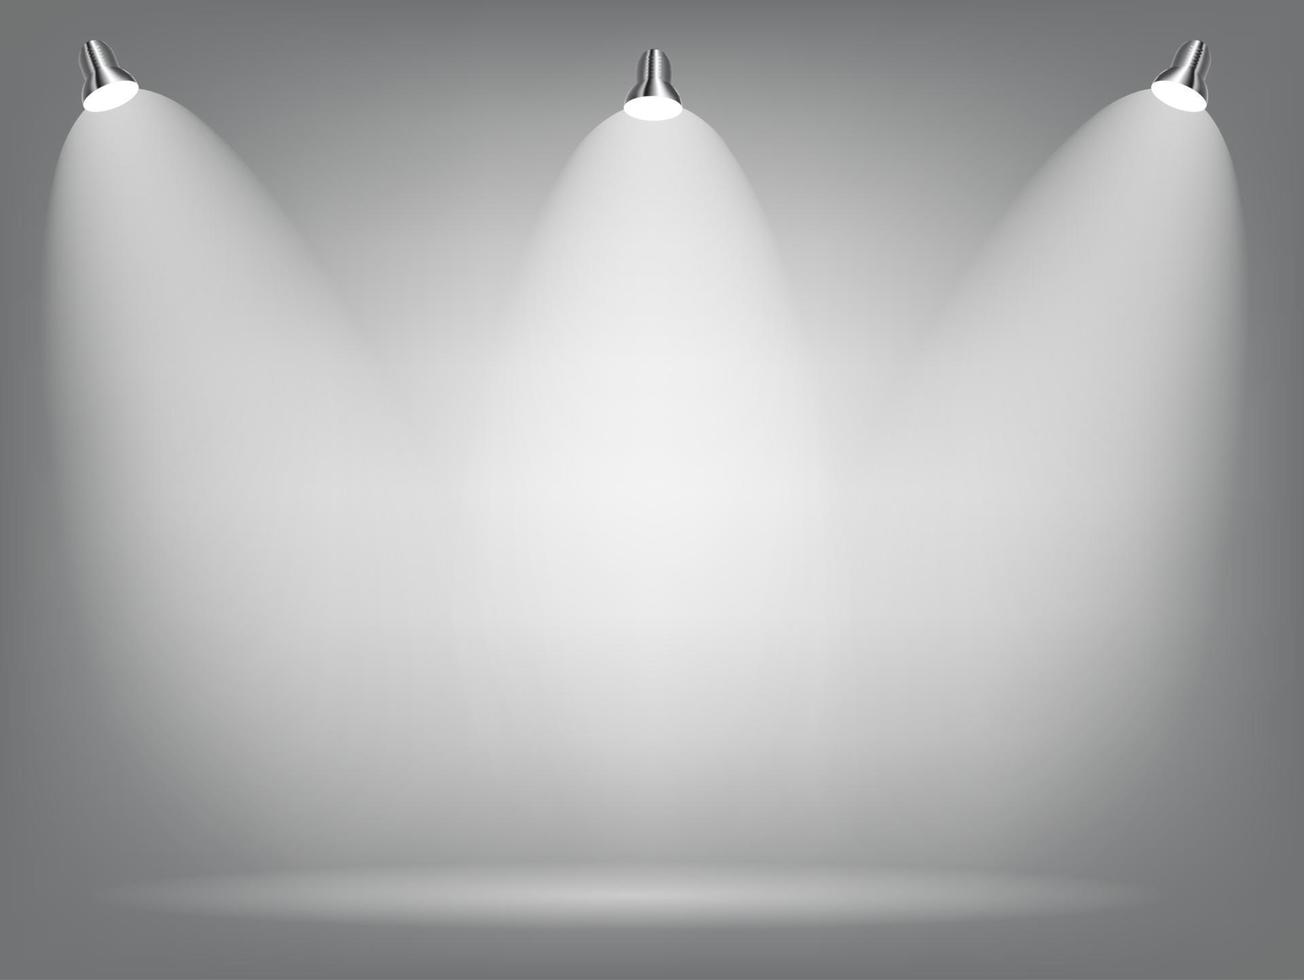 realistiska ljusa projektorer belysningslampa med spotlights ljuseffekter med transparensbakgrund. vektor illustration